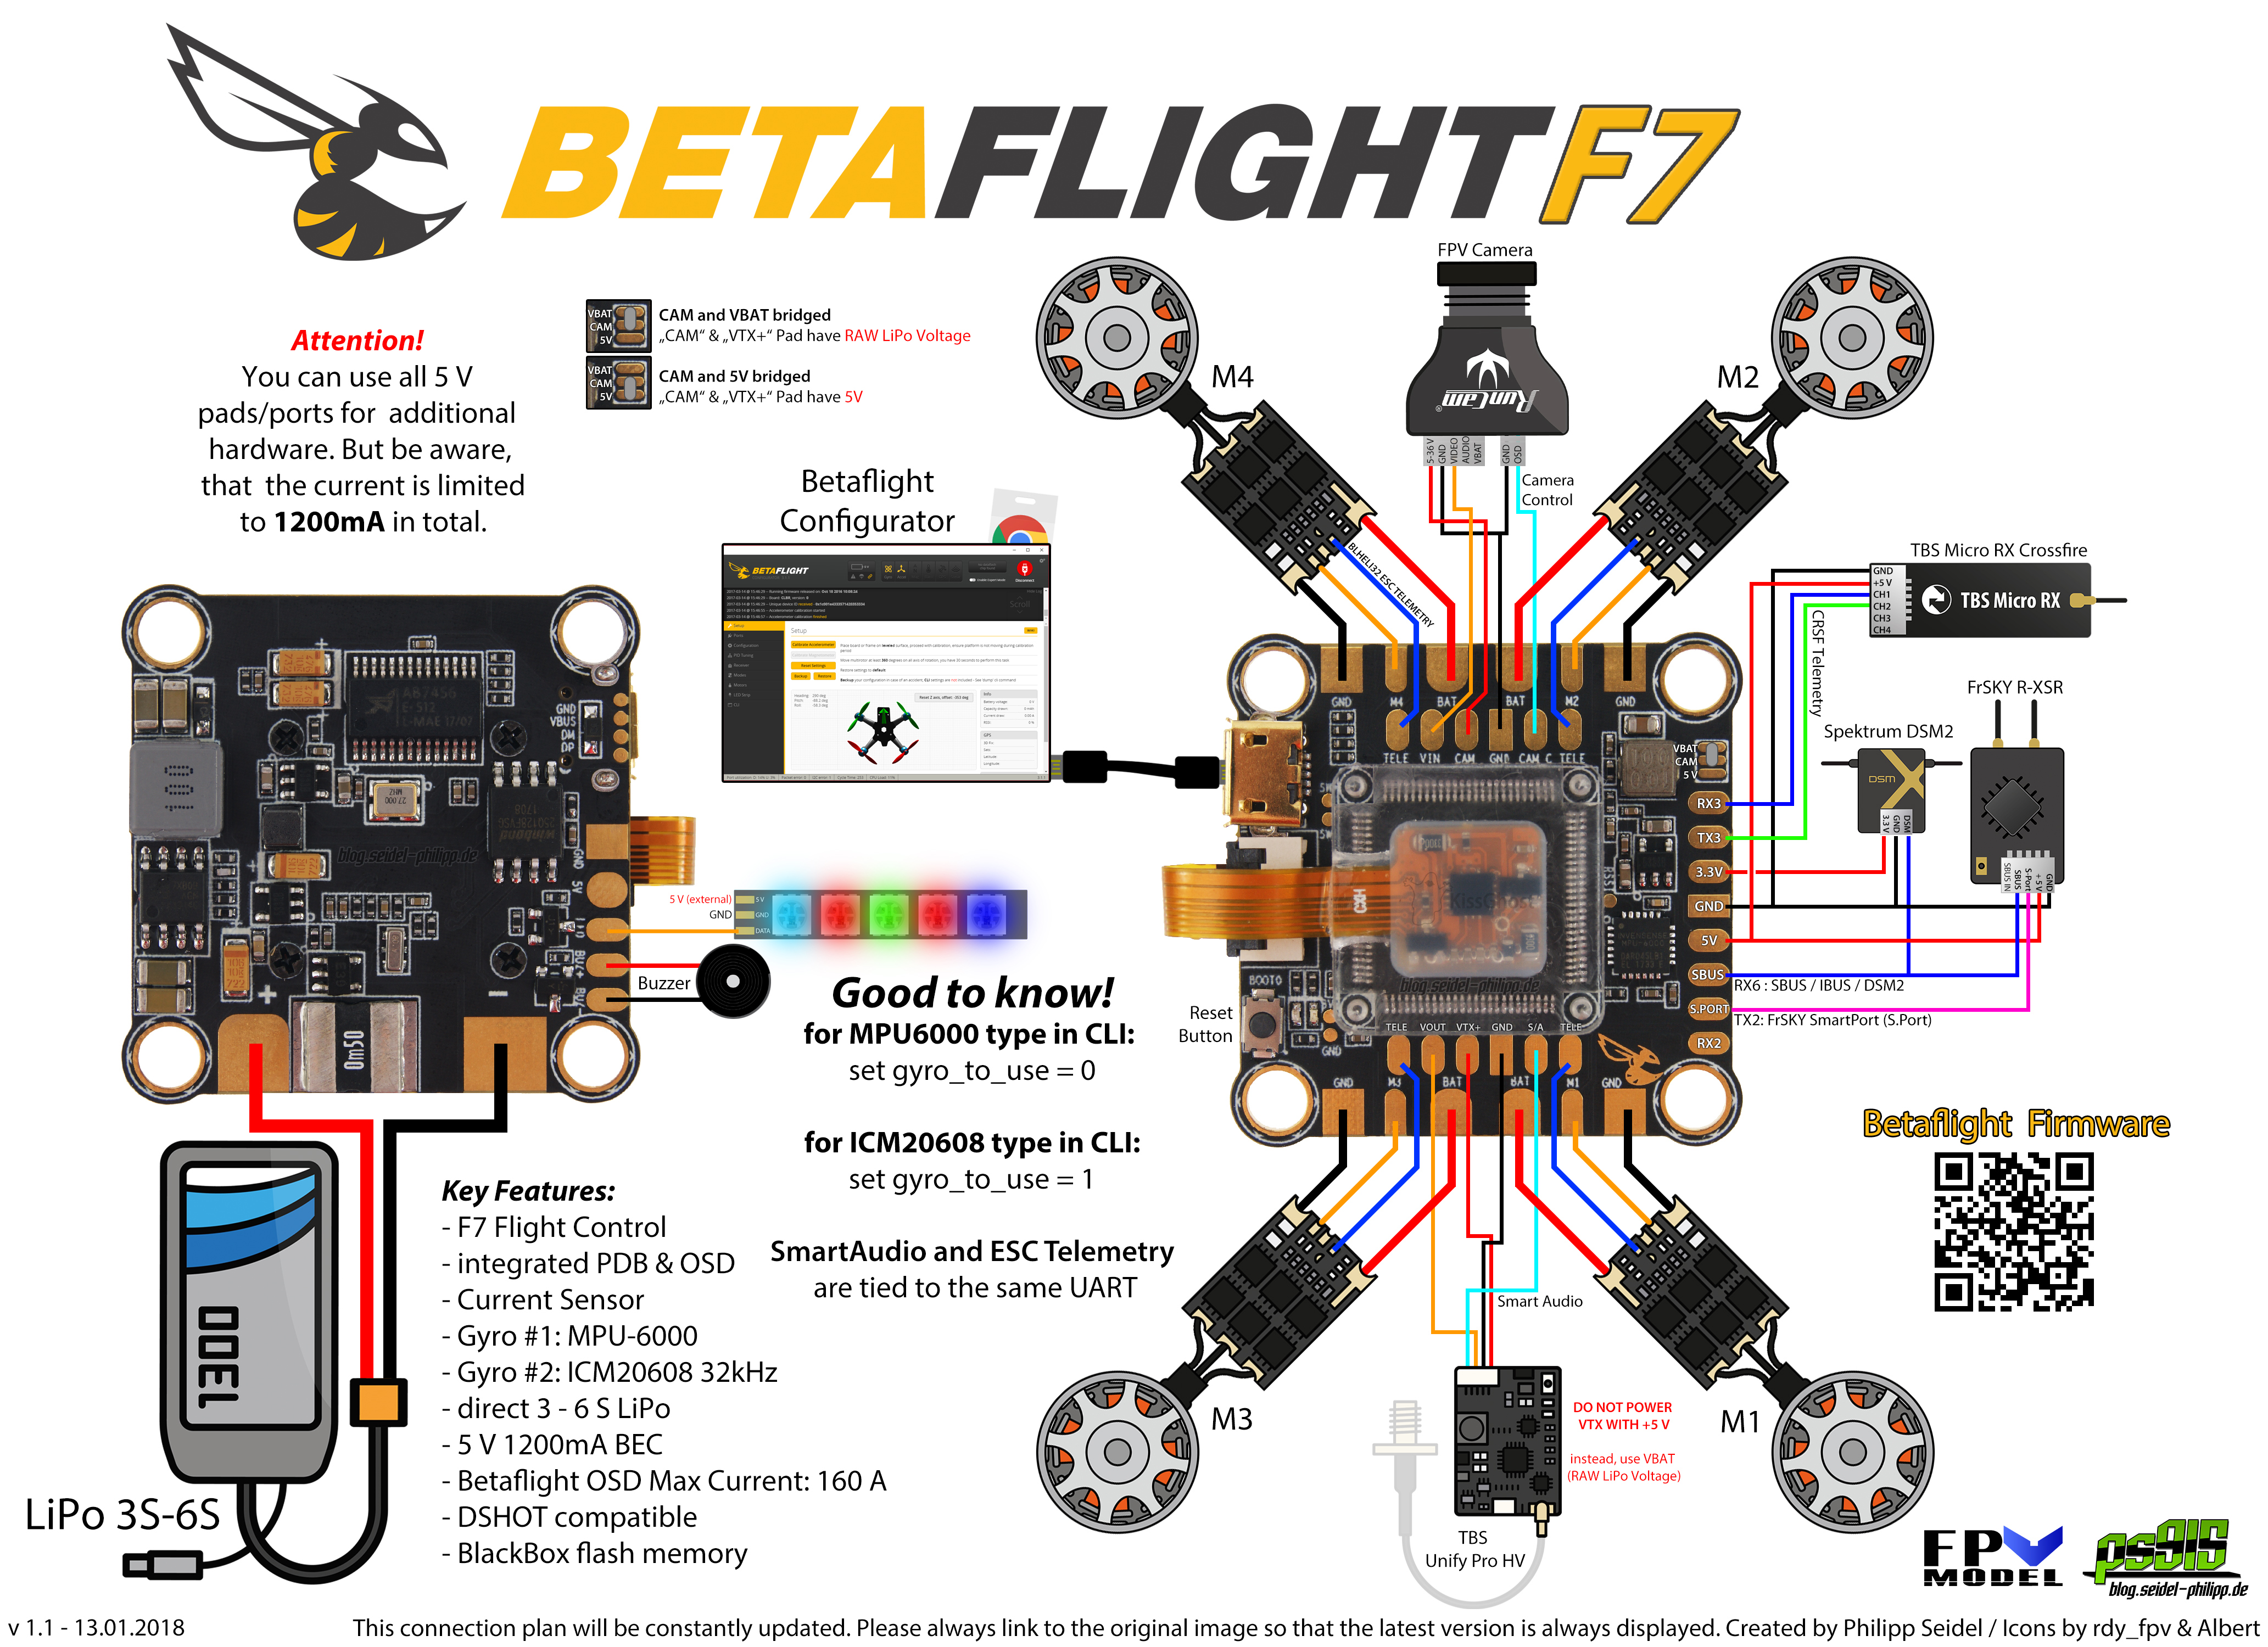 BetaflightF7 RV1 Flight Controller